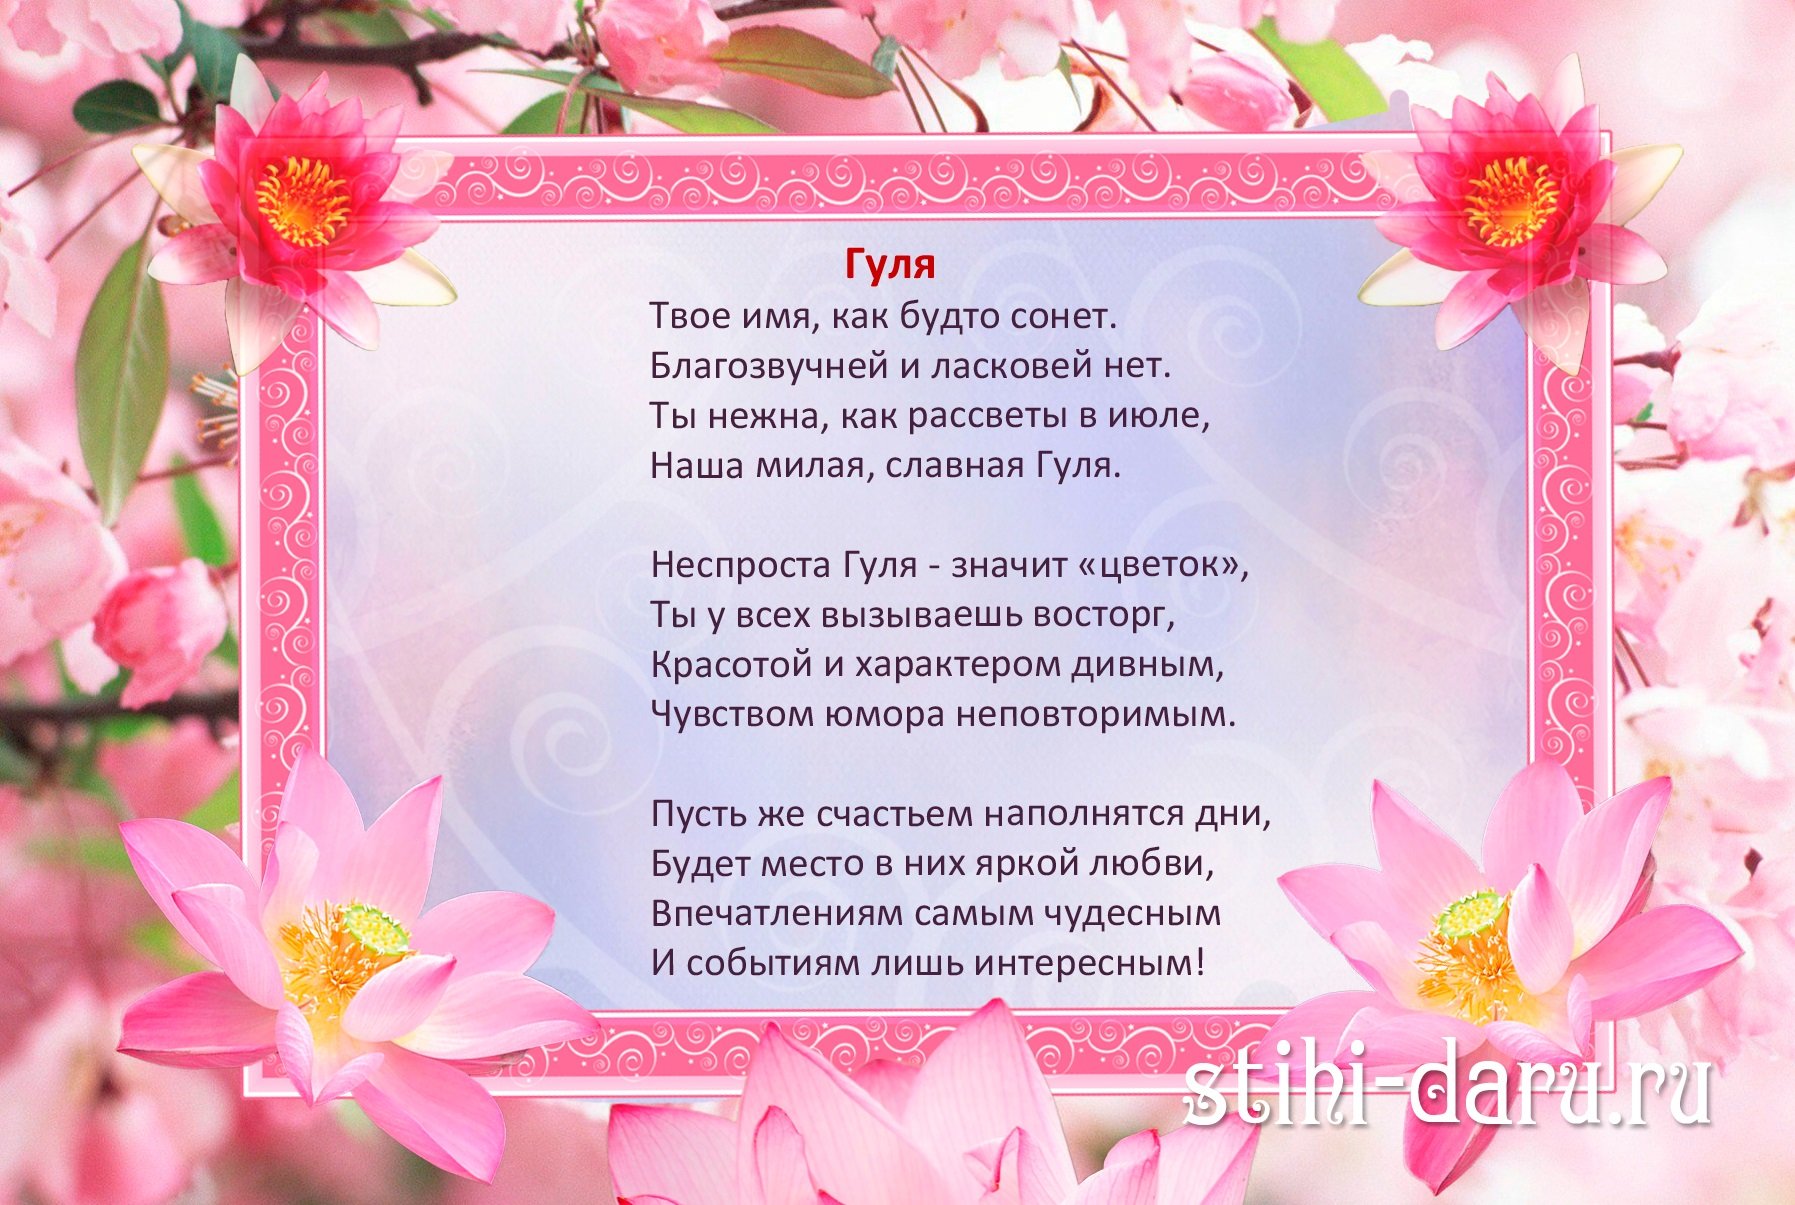 Поздравления с юбилеем на татарском языке мужчине/женщине